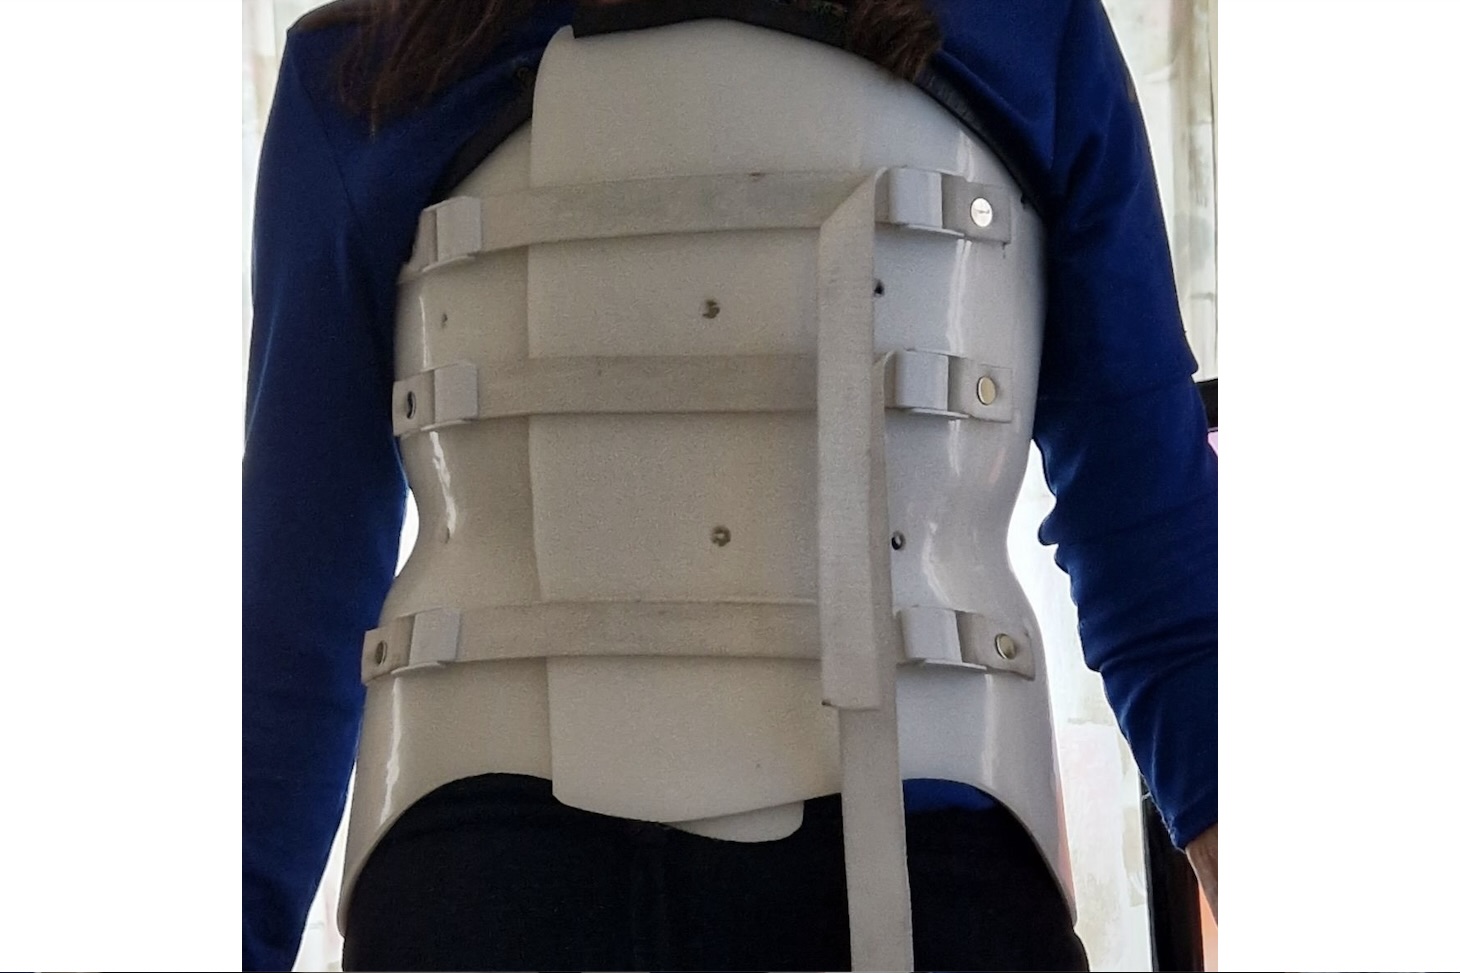 Efter att Marianne brutit ryggen fick hon bära korsett under fem månader.